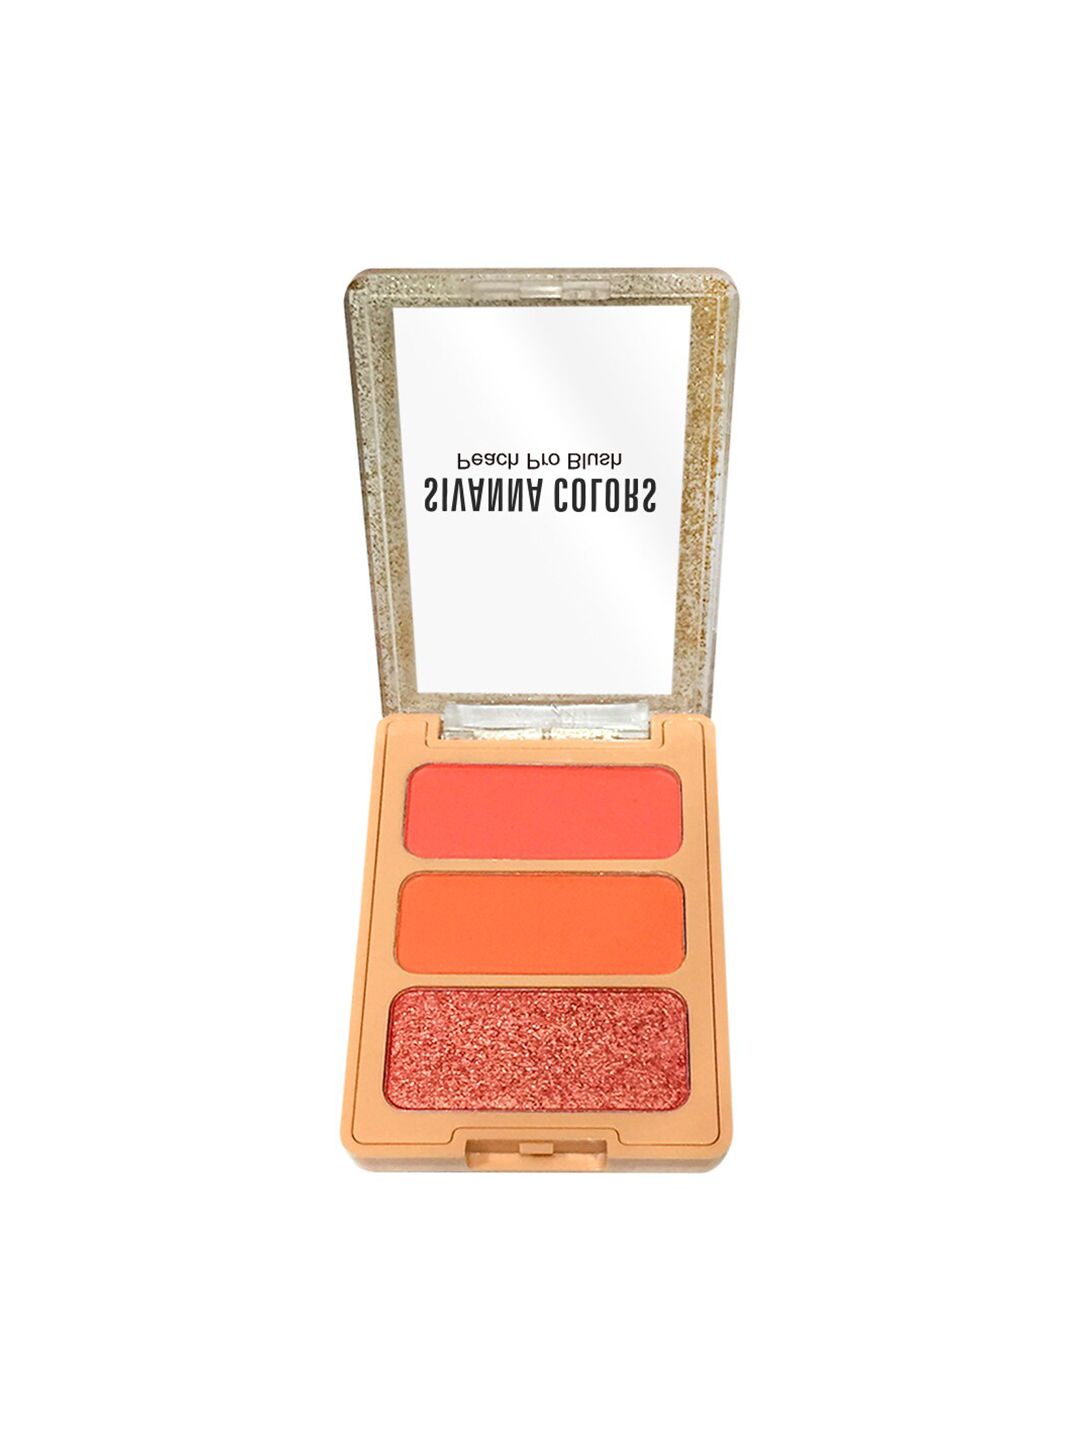 Sivanna Colors Peach Pro Blush Palette - HF6030 01 Price in India